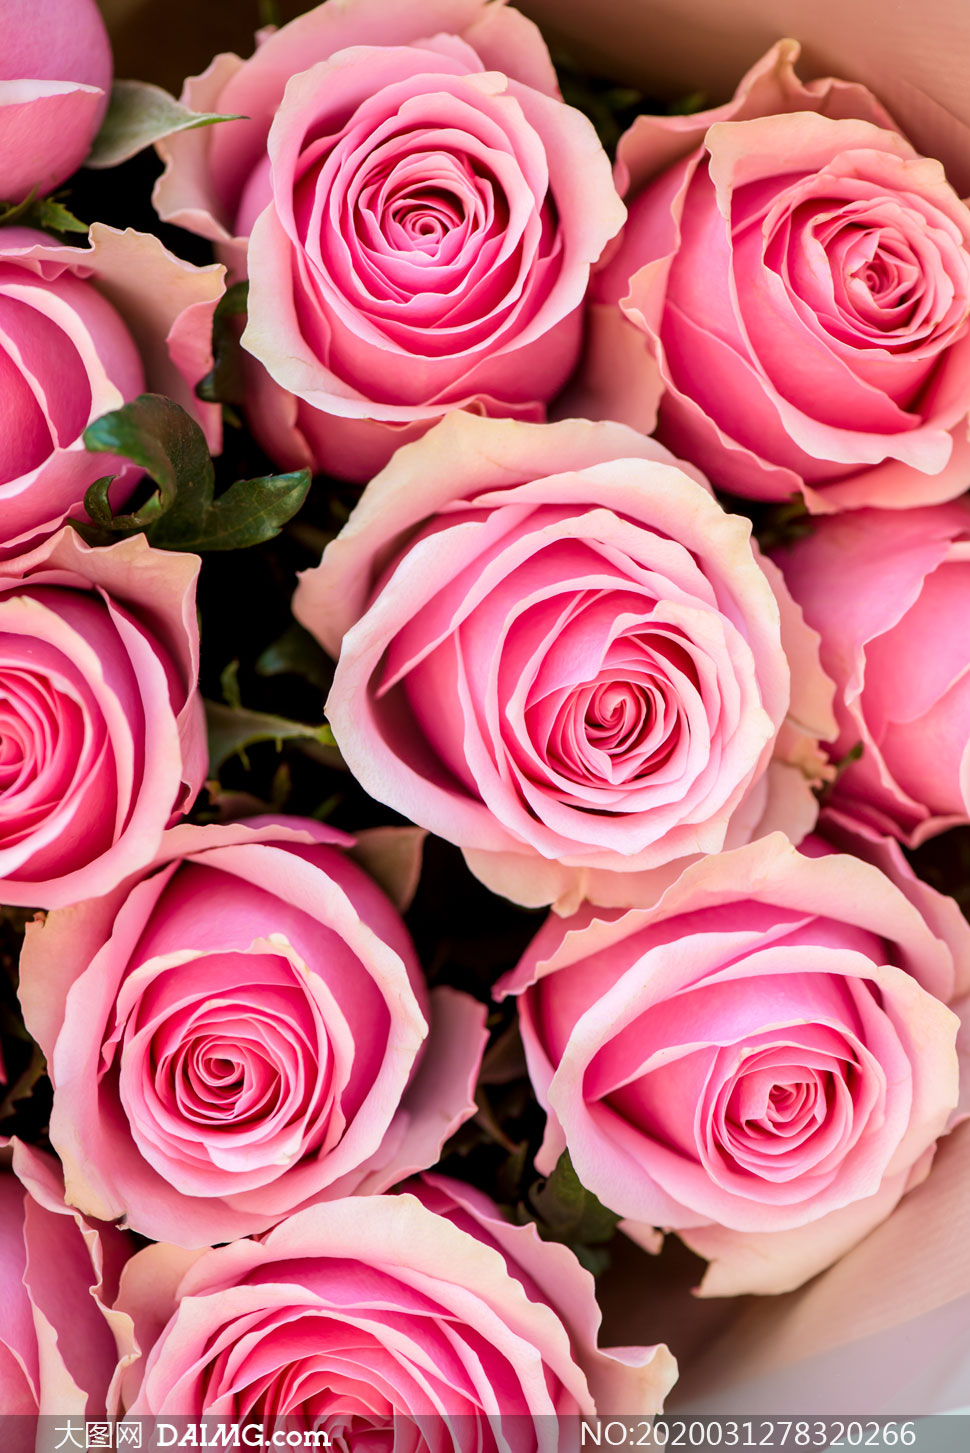 礼物盒与鲜艳的郁金香摄影高清图片         在桌上的粉色玫瑰